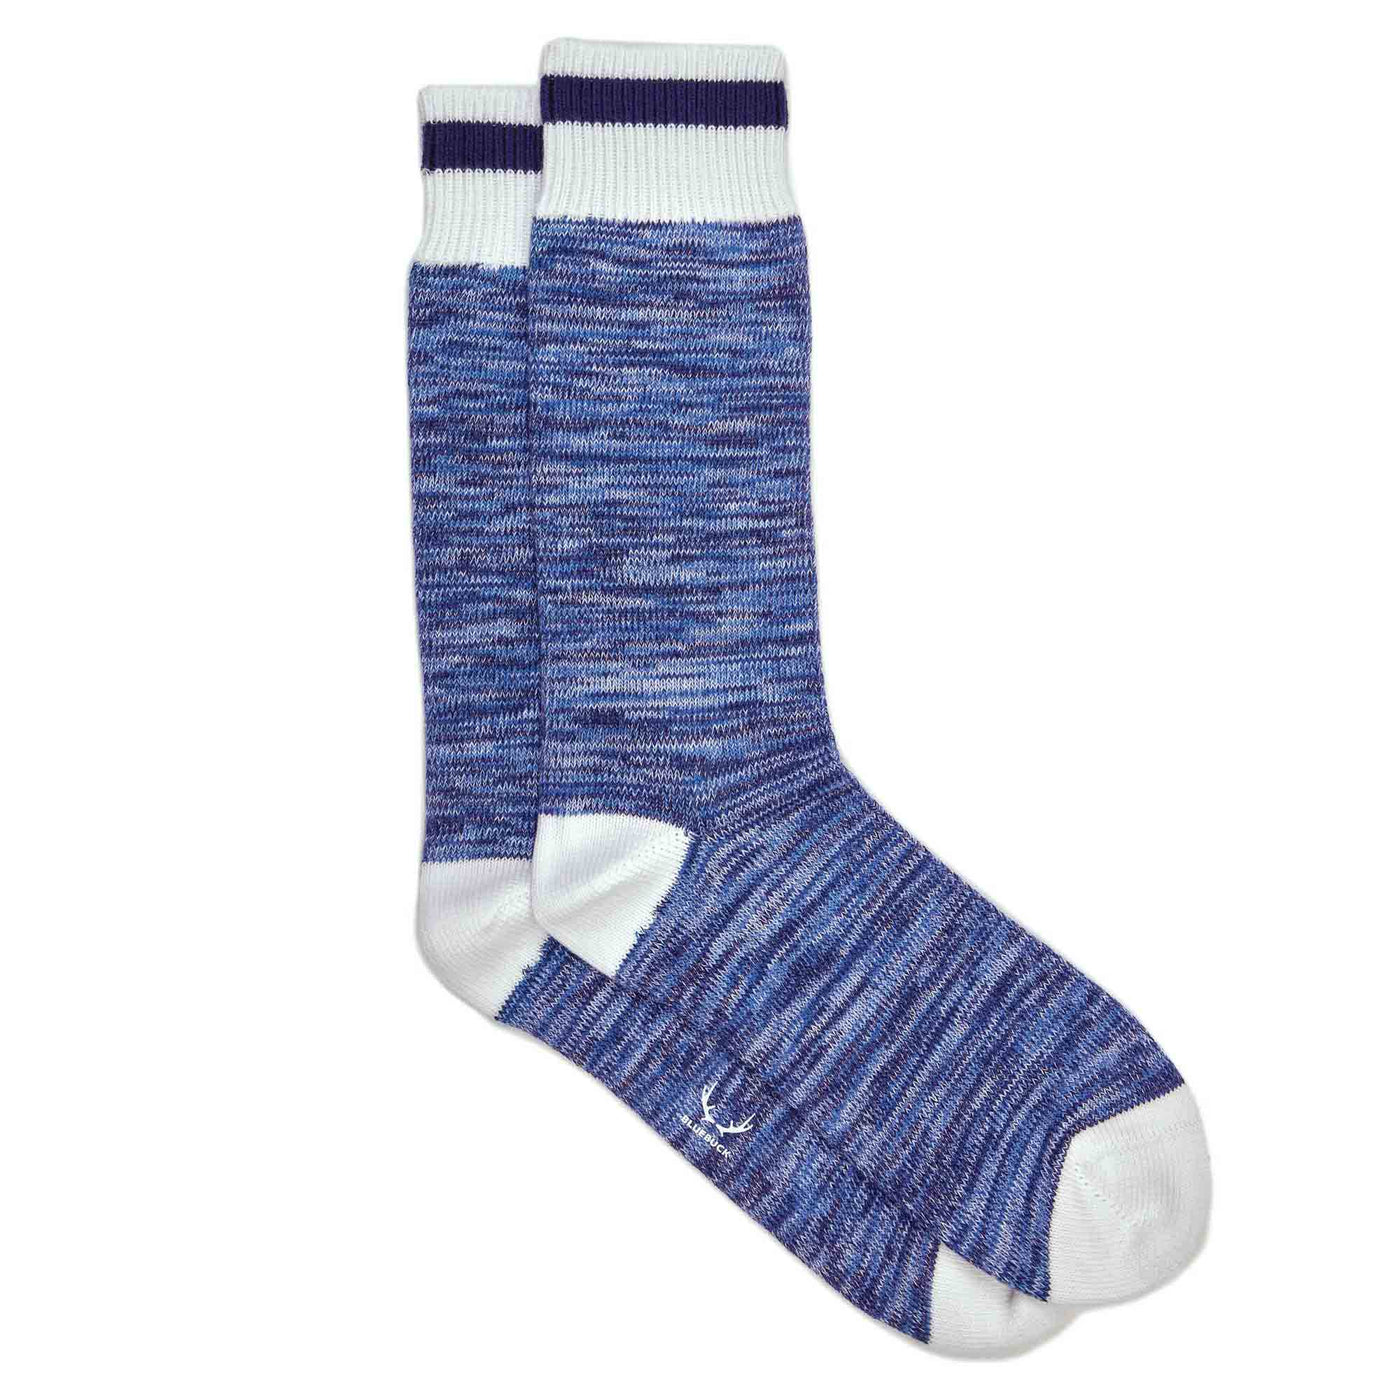 Royal blue socks